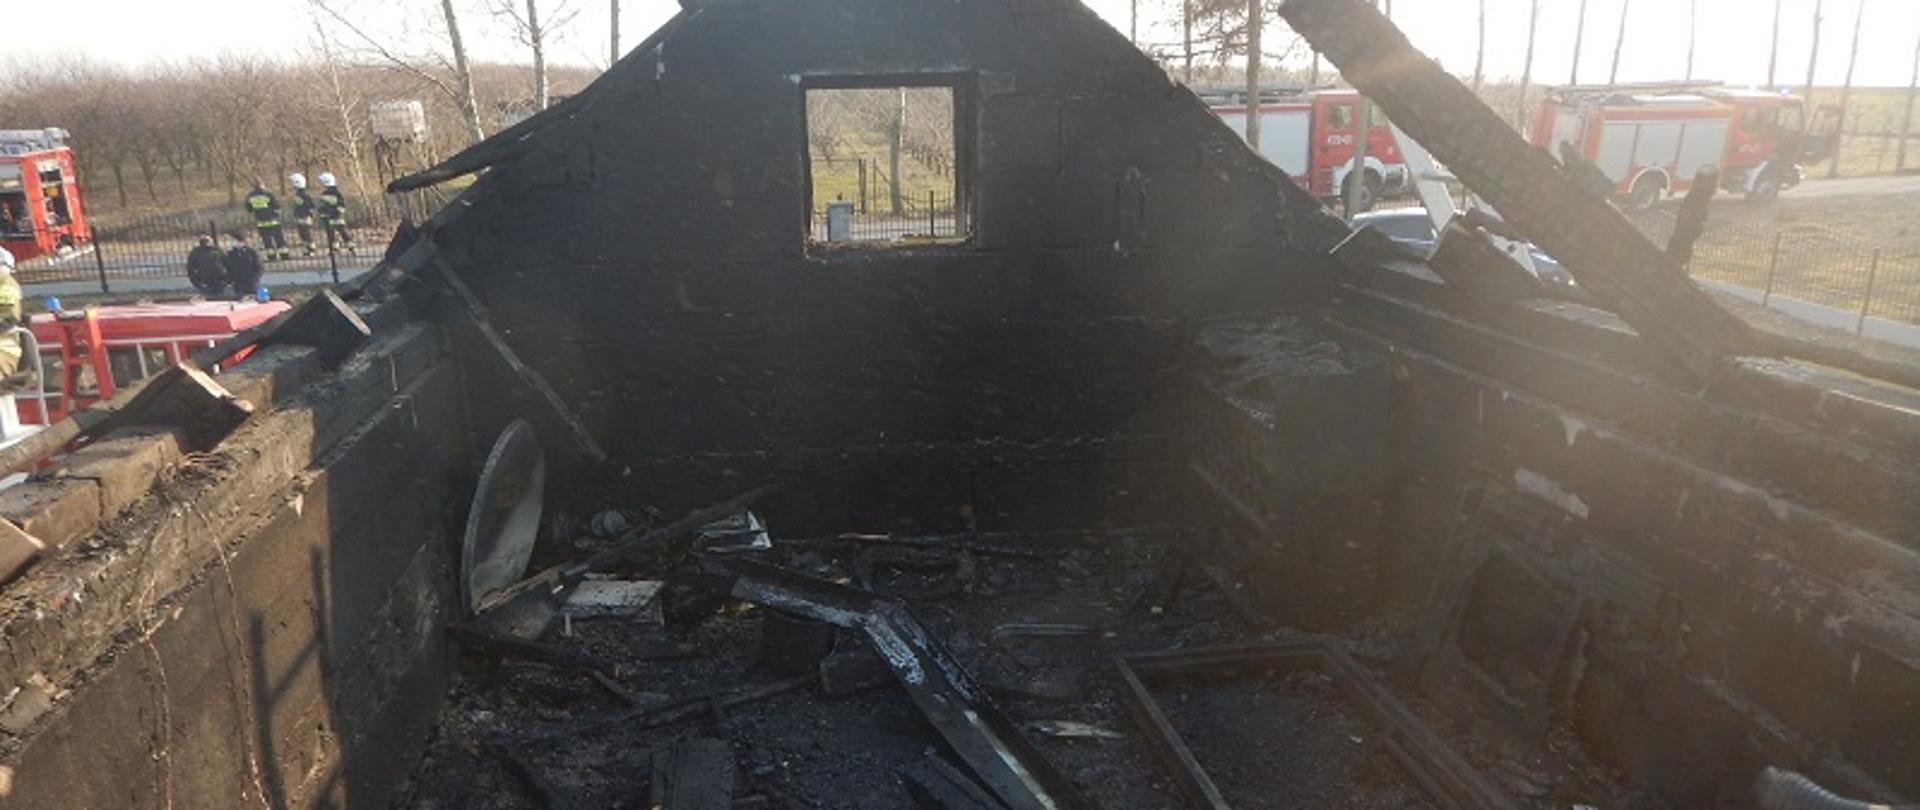 Zdjęcie przedstawia spalone poddasze budynku mieszkalnego